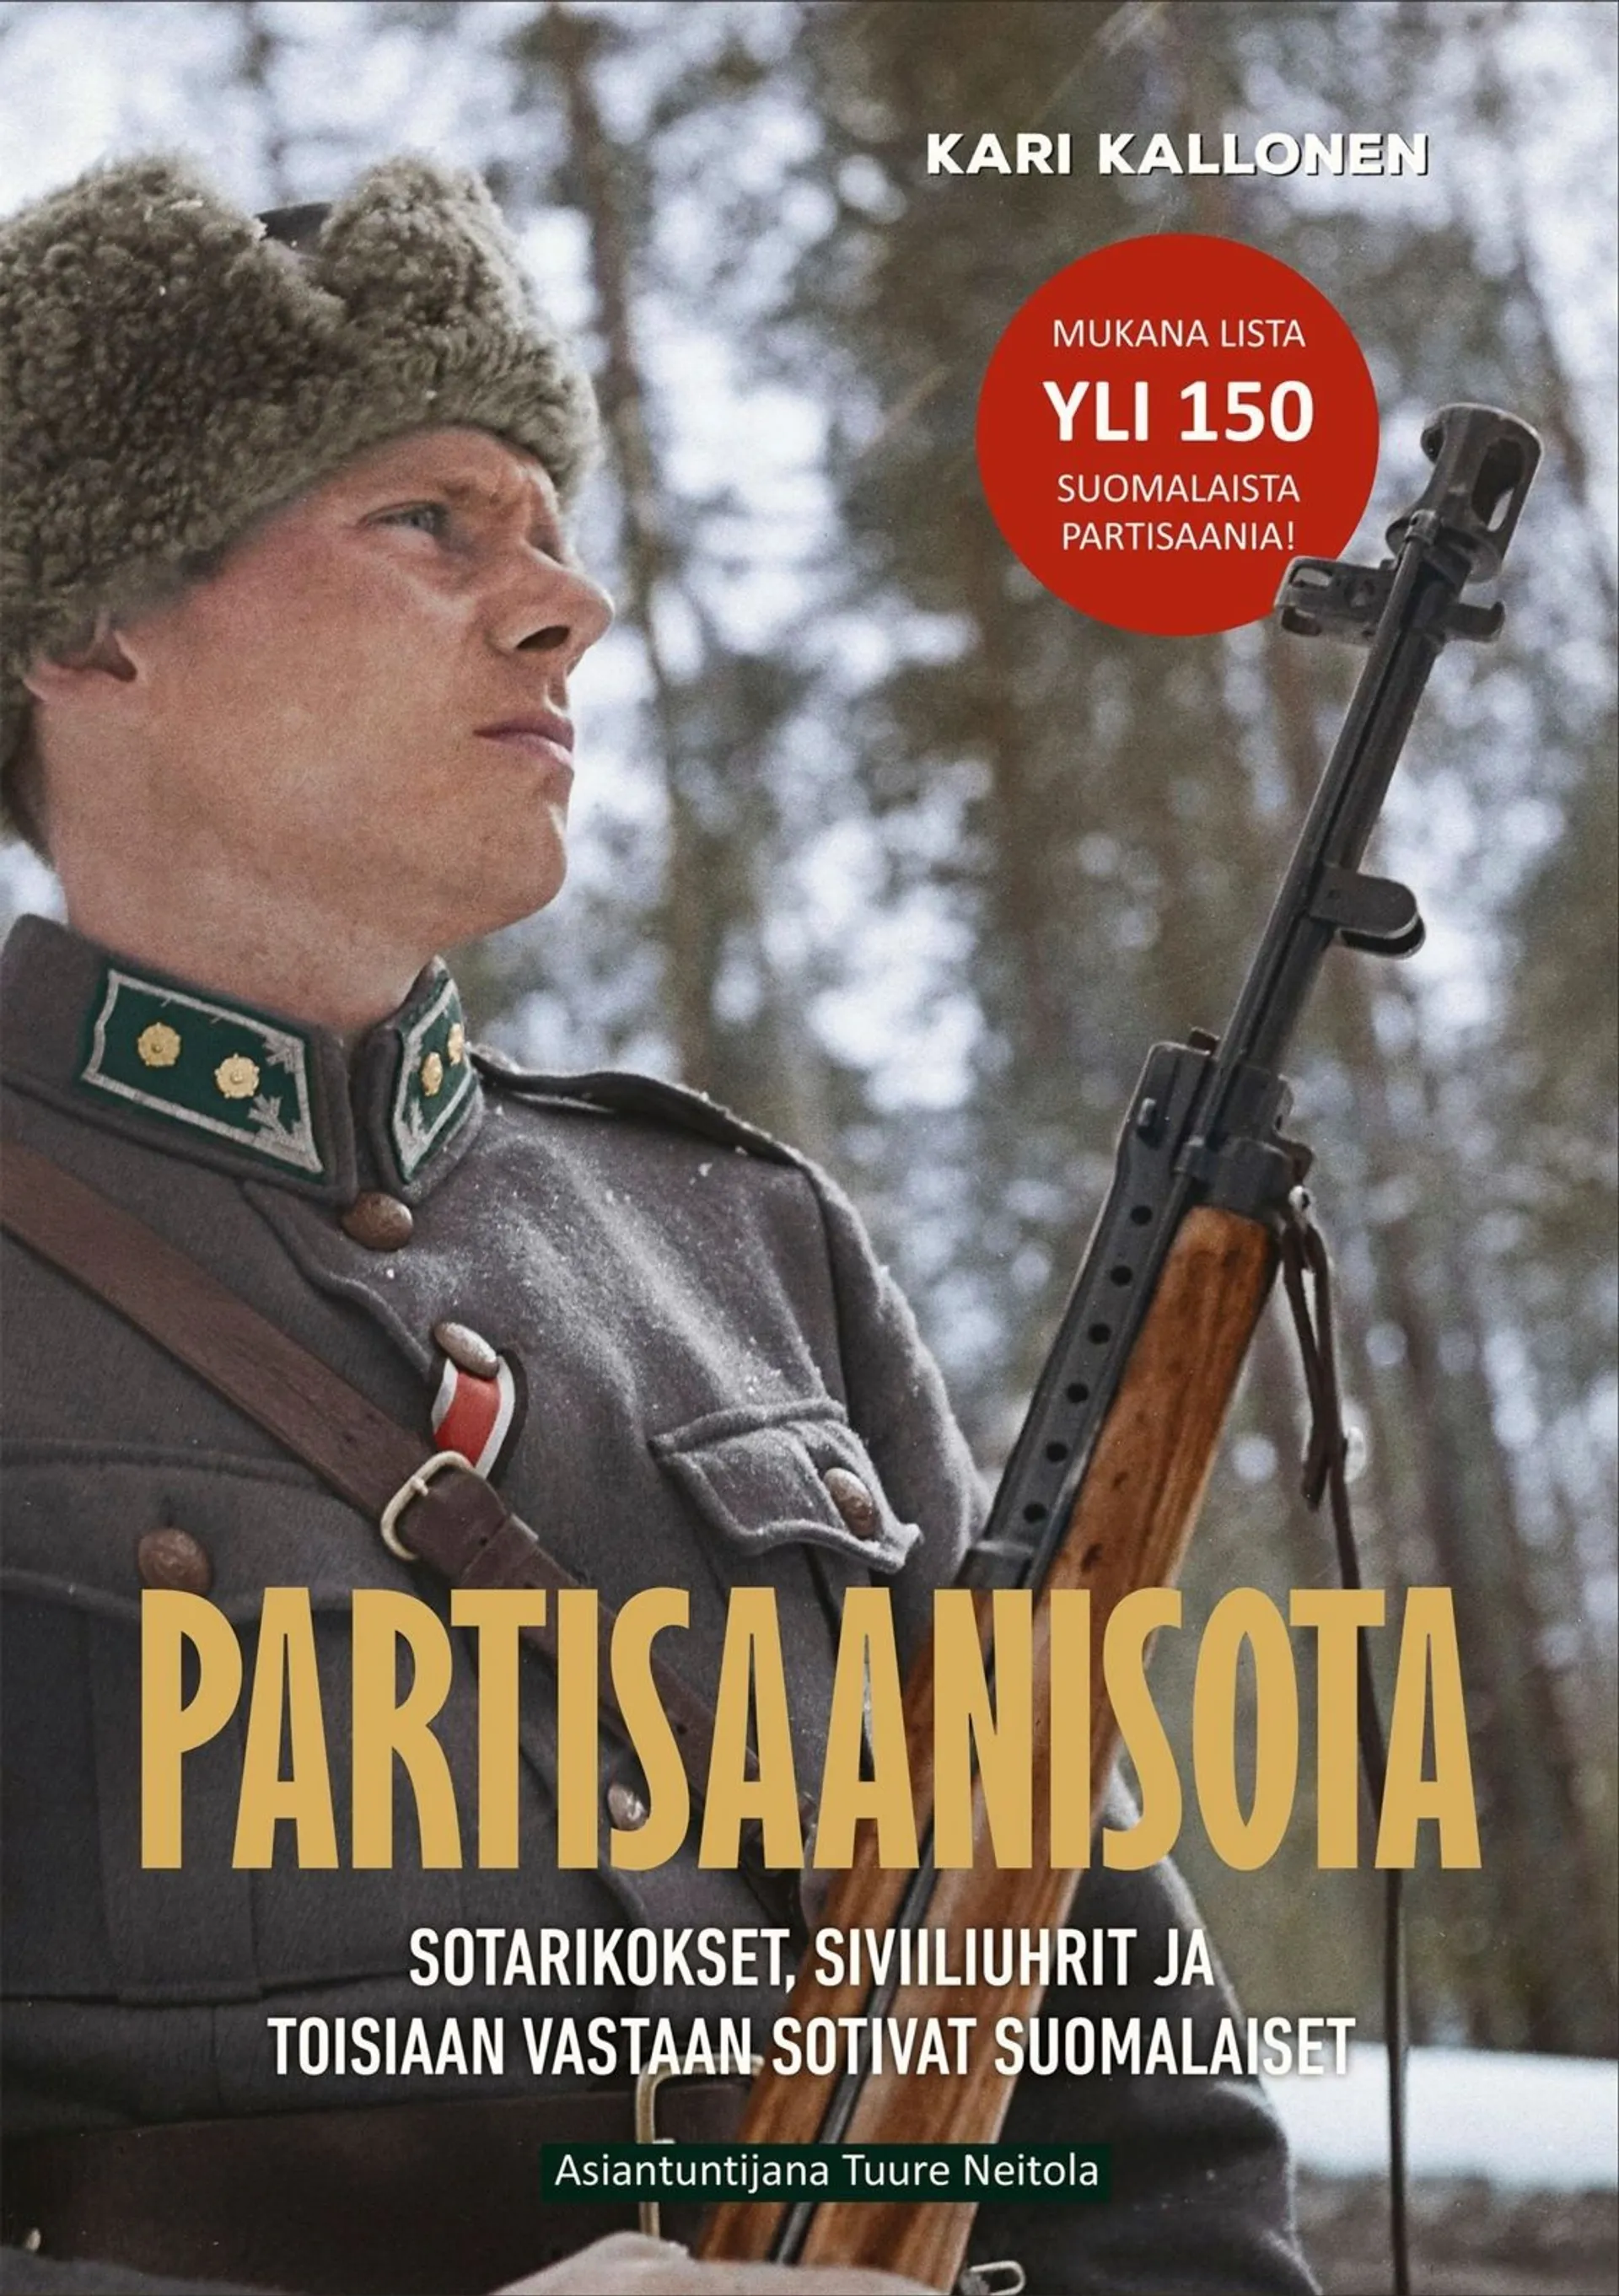 Kallonen, Partisaanisota - Sotarikokset, siviiliuhrit ja toisiaan vastaan sotivat suomalaiset